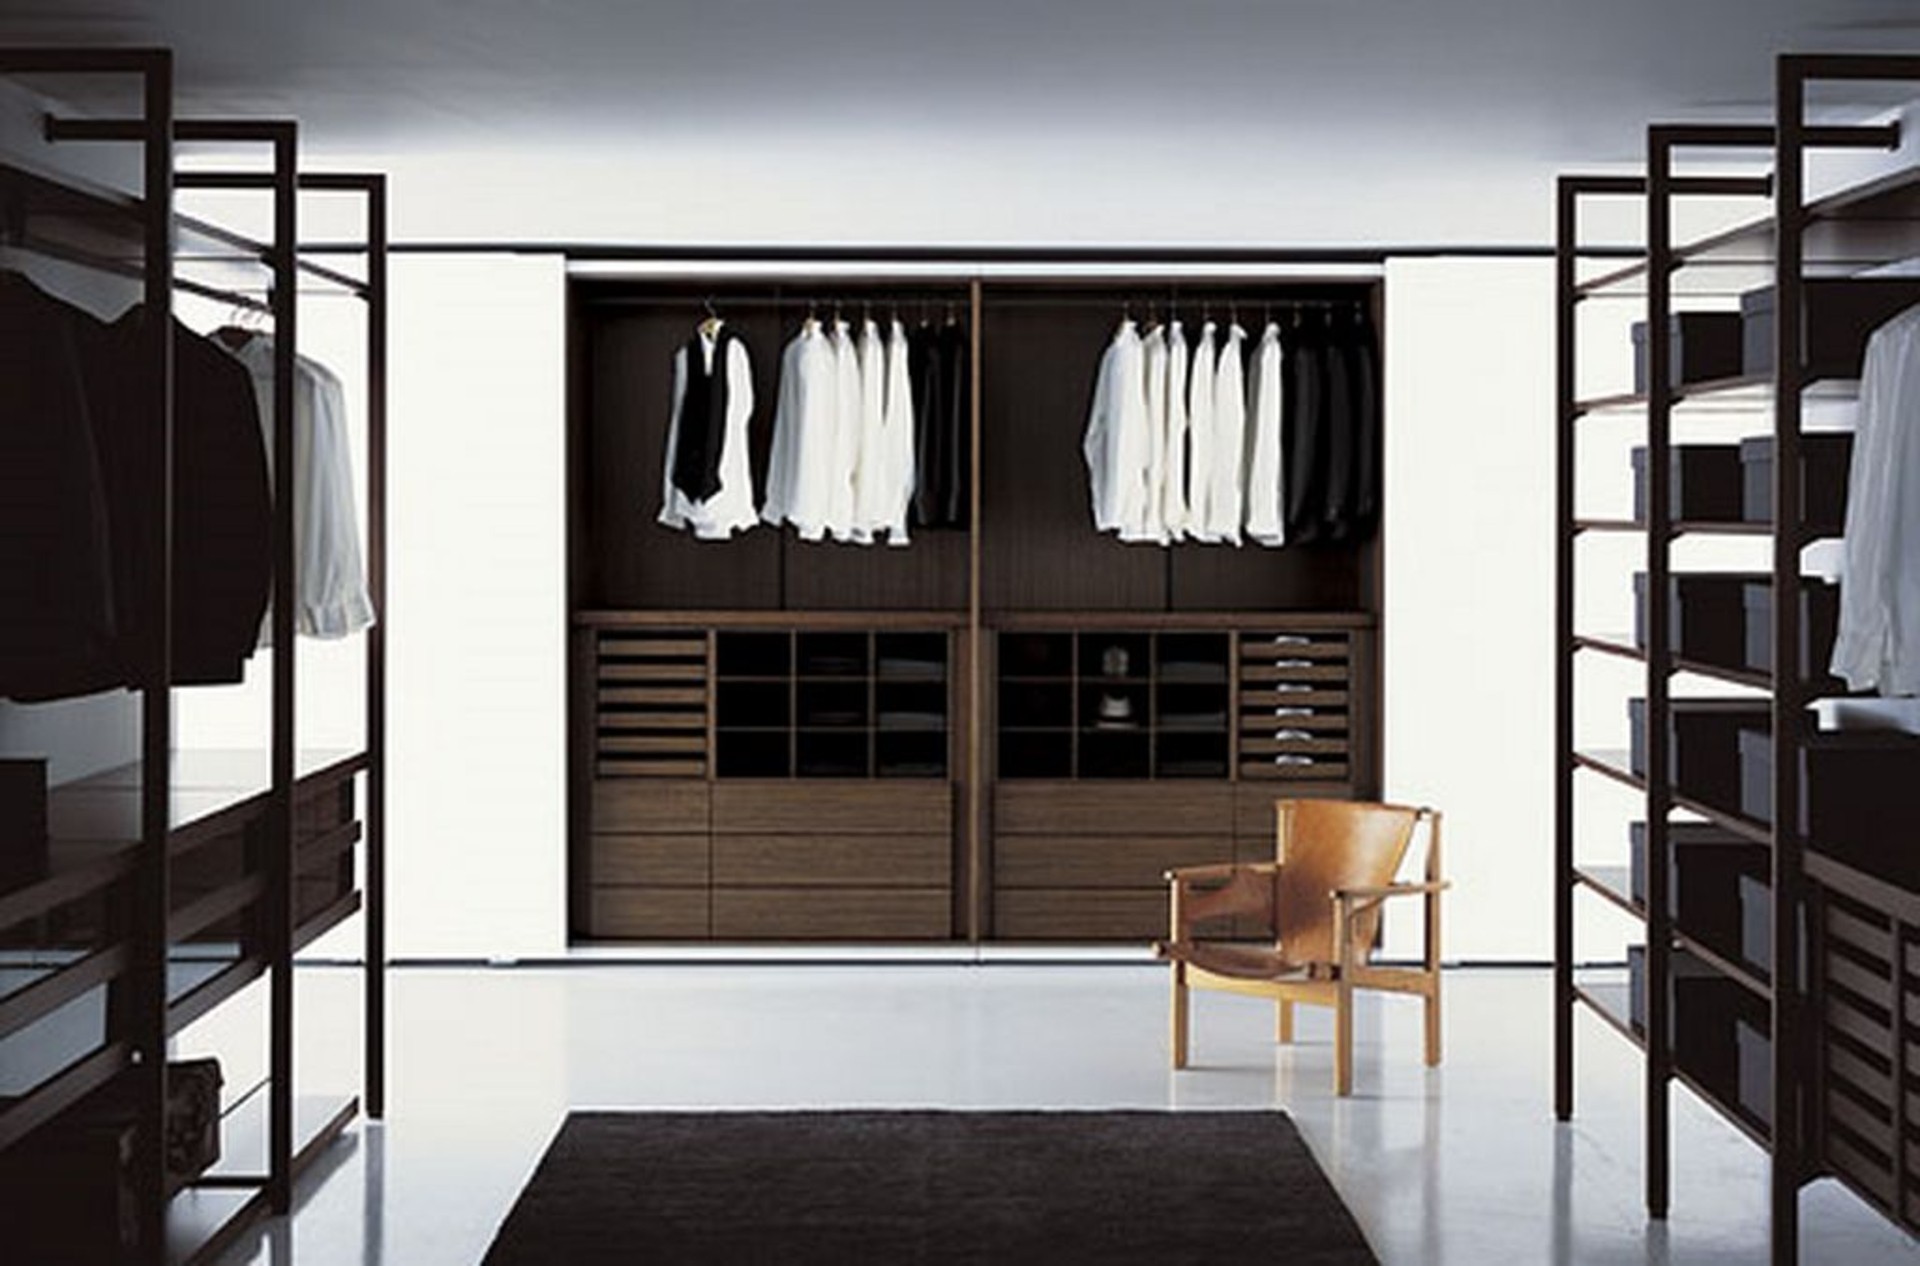 Magnificent Midcentury Closet Design